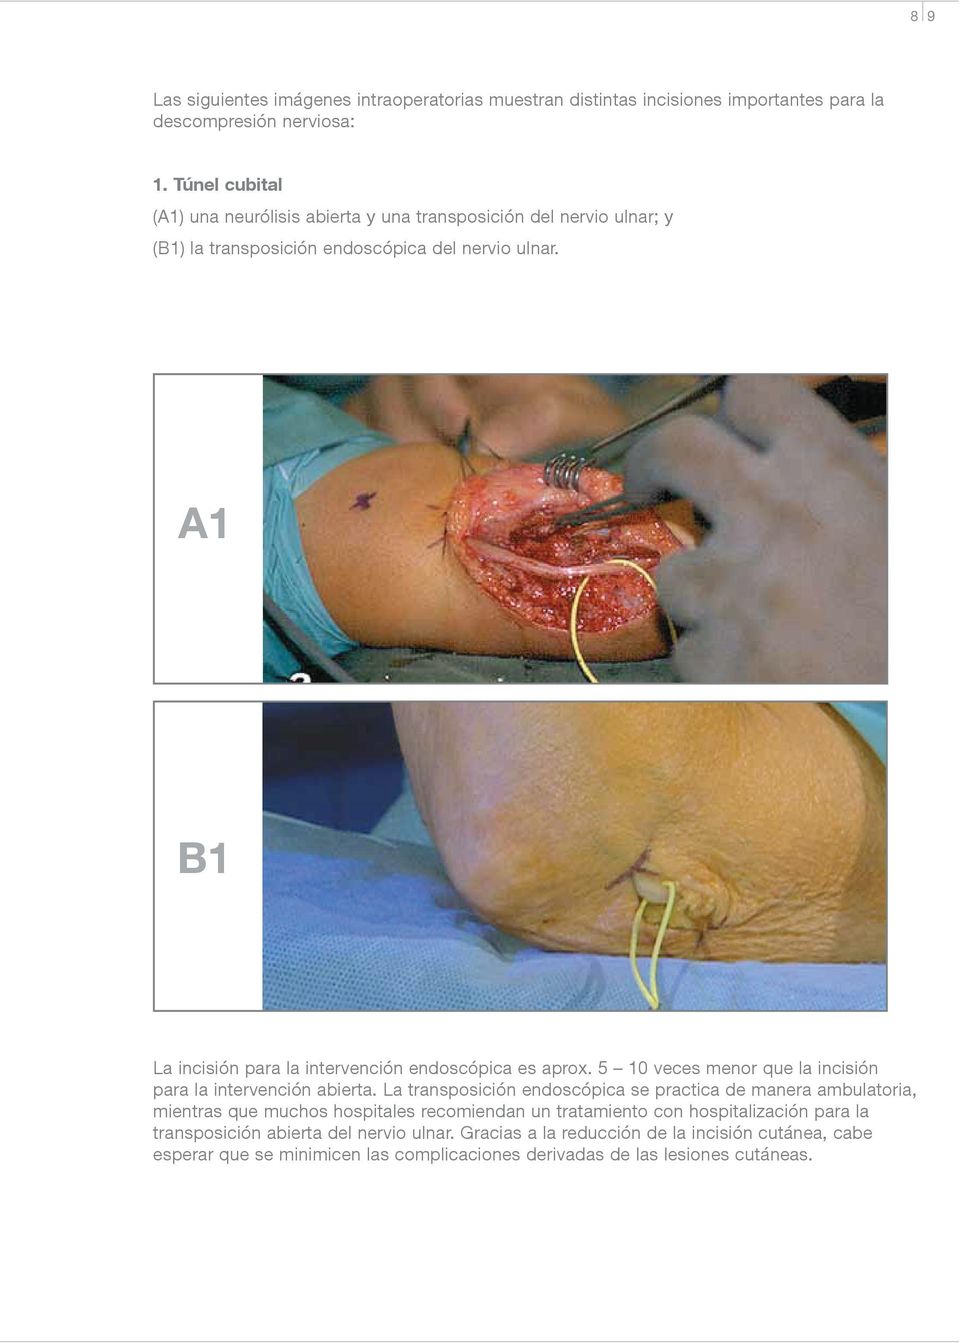 A1 B1 La incisión para la intervención endoscópica es aprox. 5 10 veces menor que la incisión para la intervención abierta.